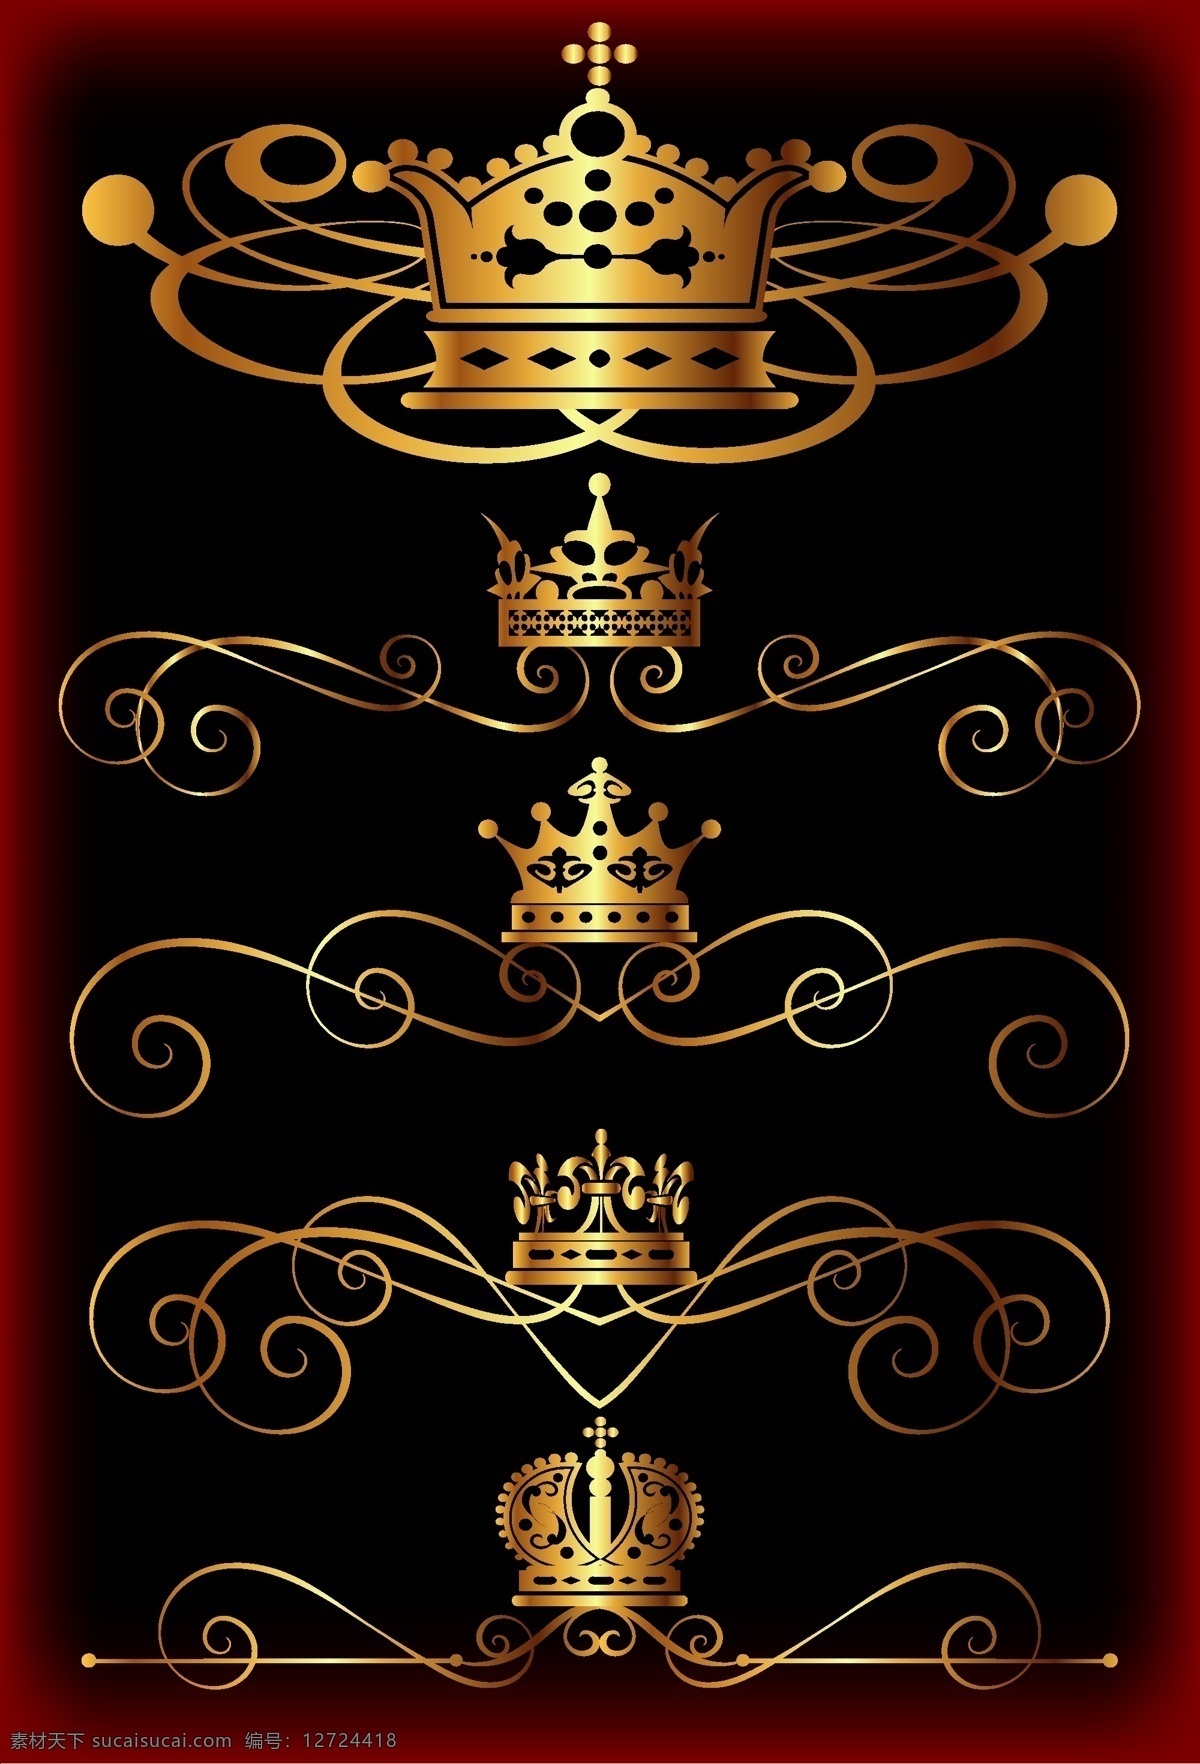 皇宫 高贵 皇冠 精致 流 线条 网页设计 标签 金色 流线条 矢量素材 设计素材